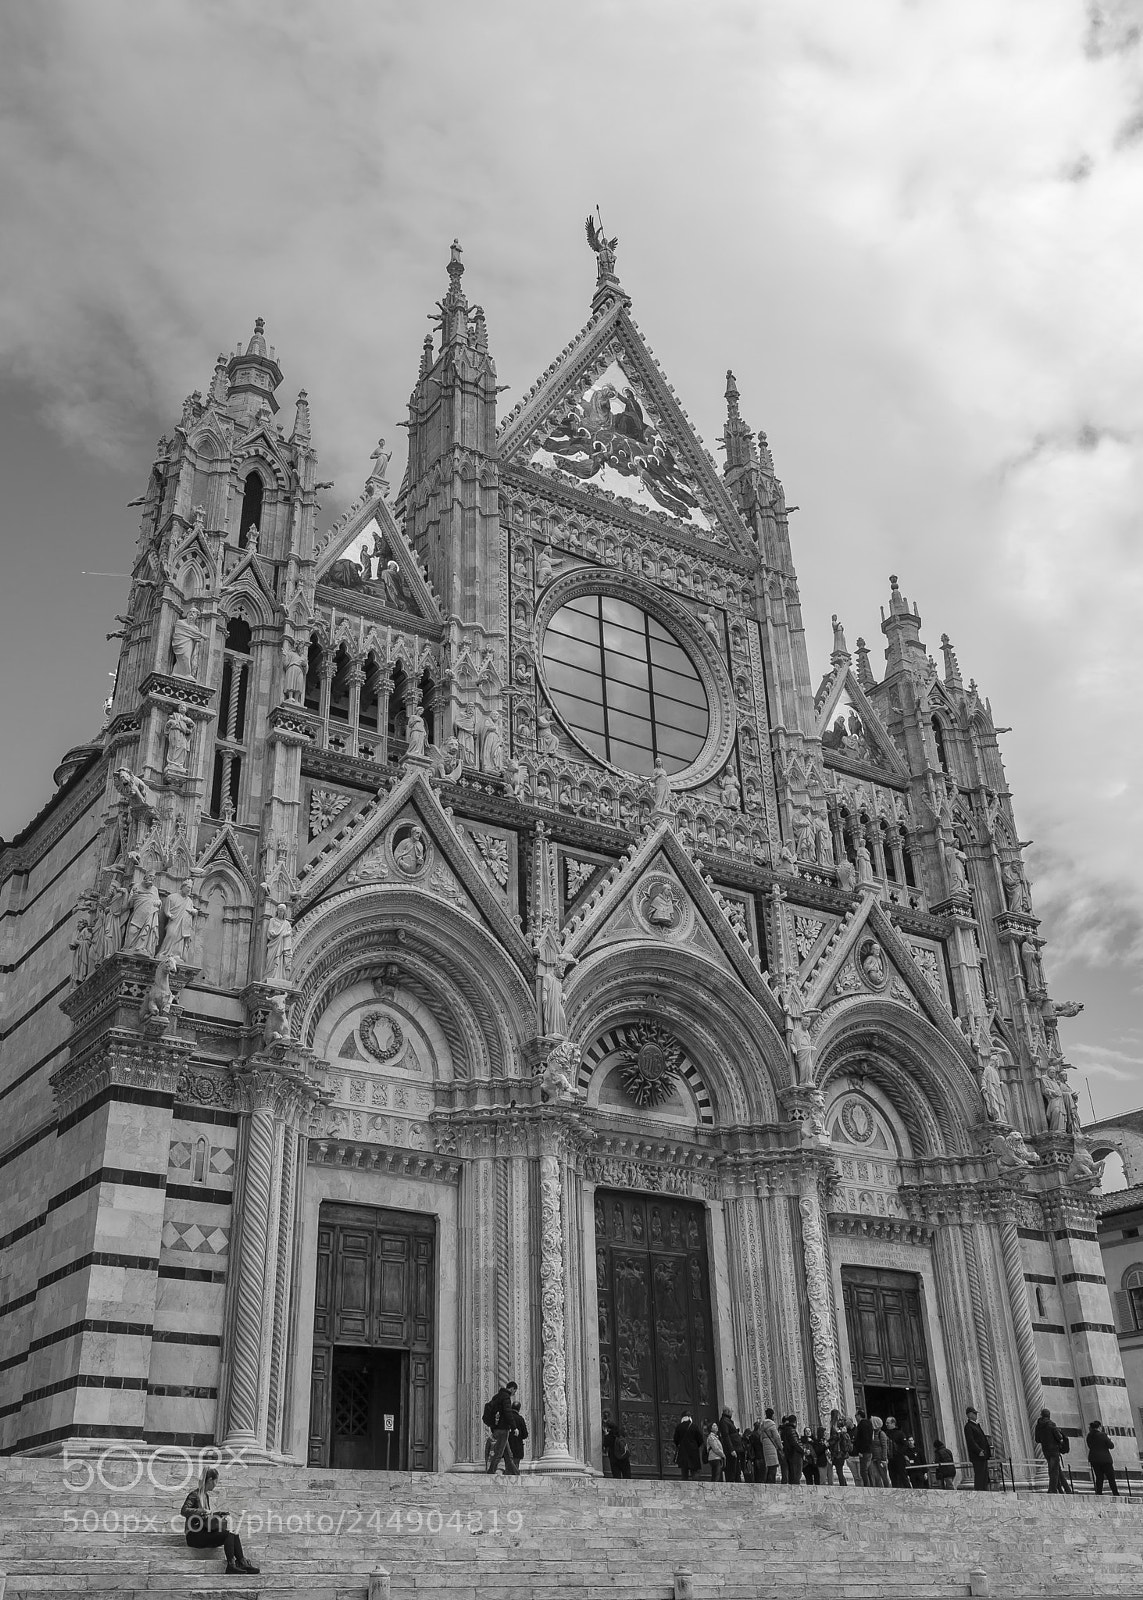 Nikon Coolpix A sample photo. Duomo de siena. photography